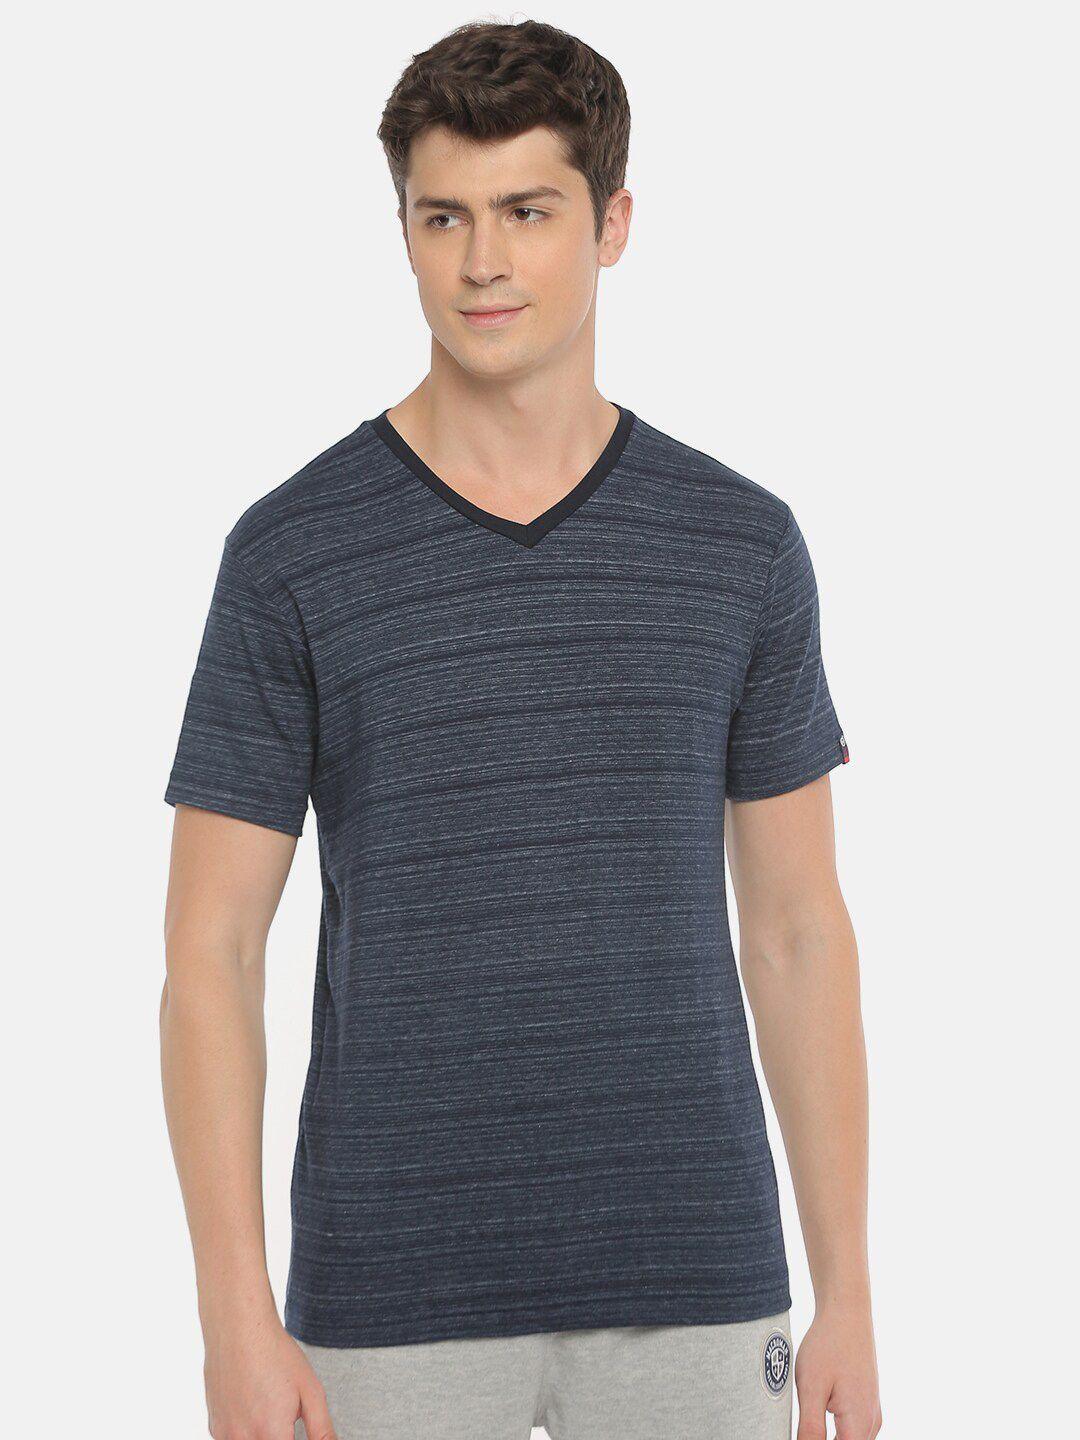 macroman m-series striped v-neck cotton sports t-shirt